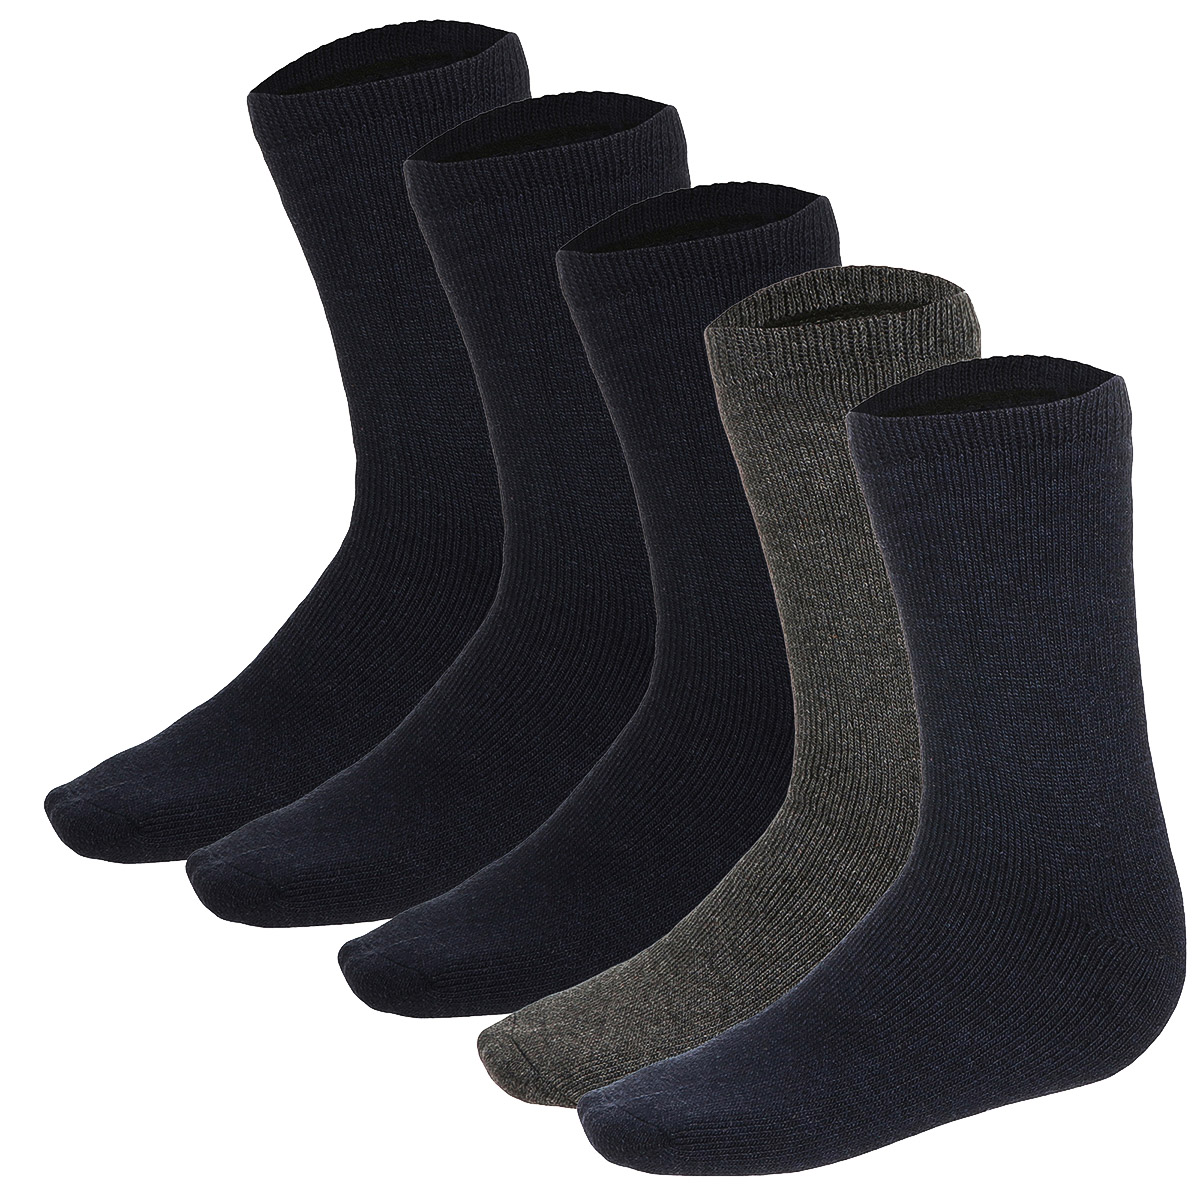 10-20 Paar Herren Socken Komfortbund ohne Gummi Baumwolle grau blau schwarz 